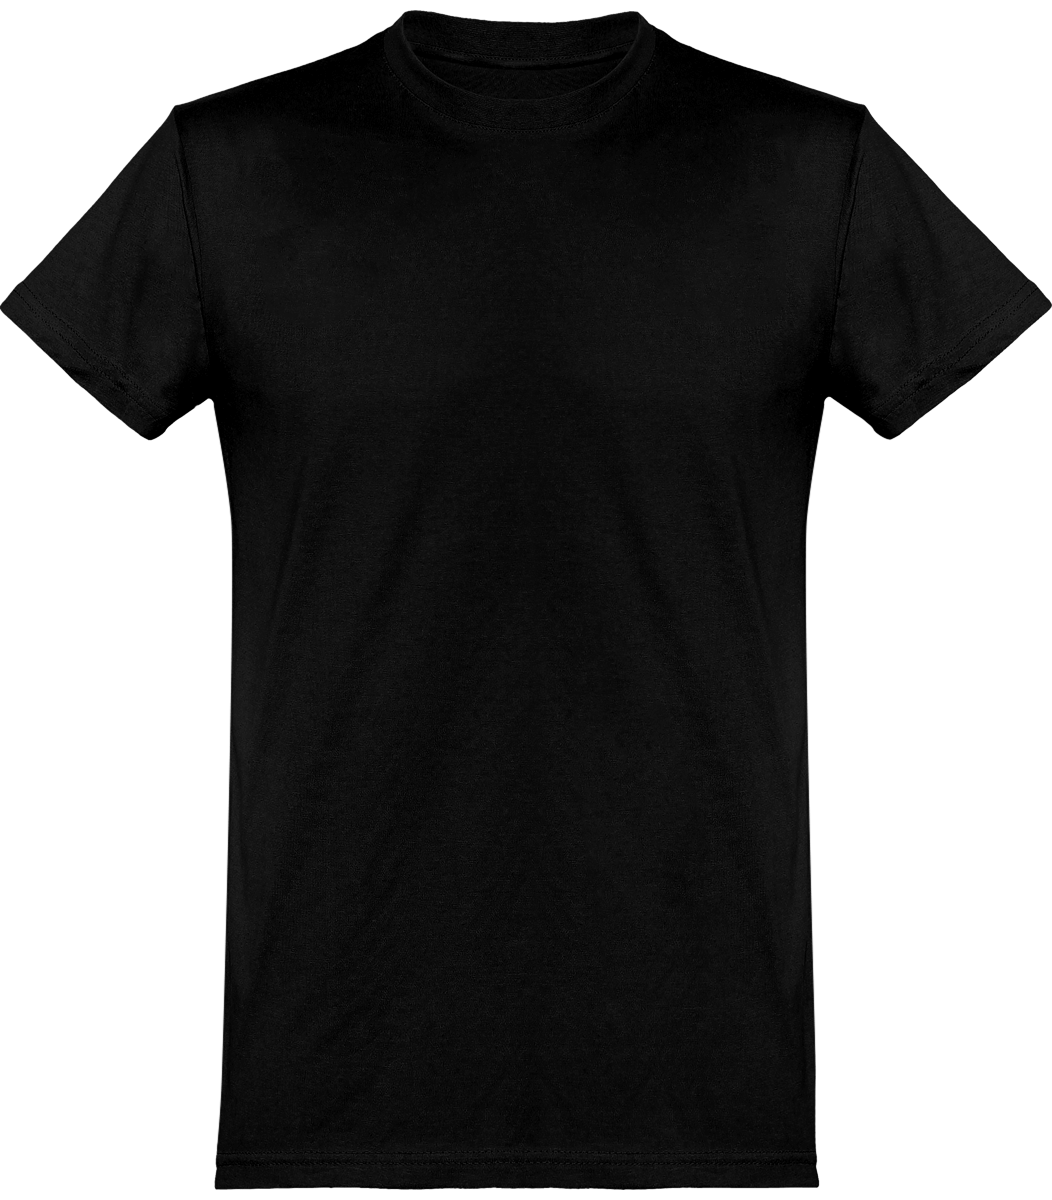 Camiseta Básica Hombre Manga Corta Personalizada En Bordado O Estampado | Tunetoo Black Pure